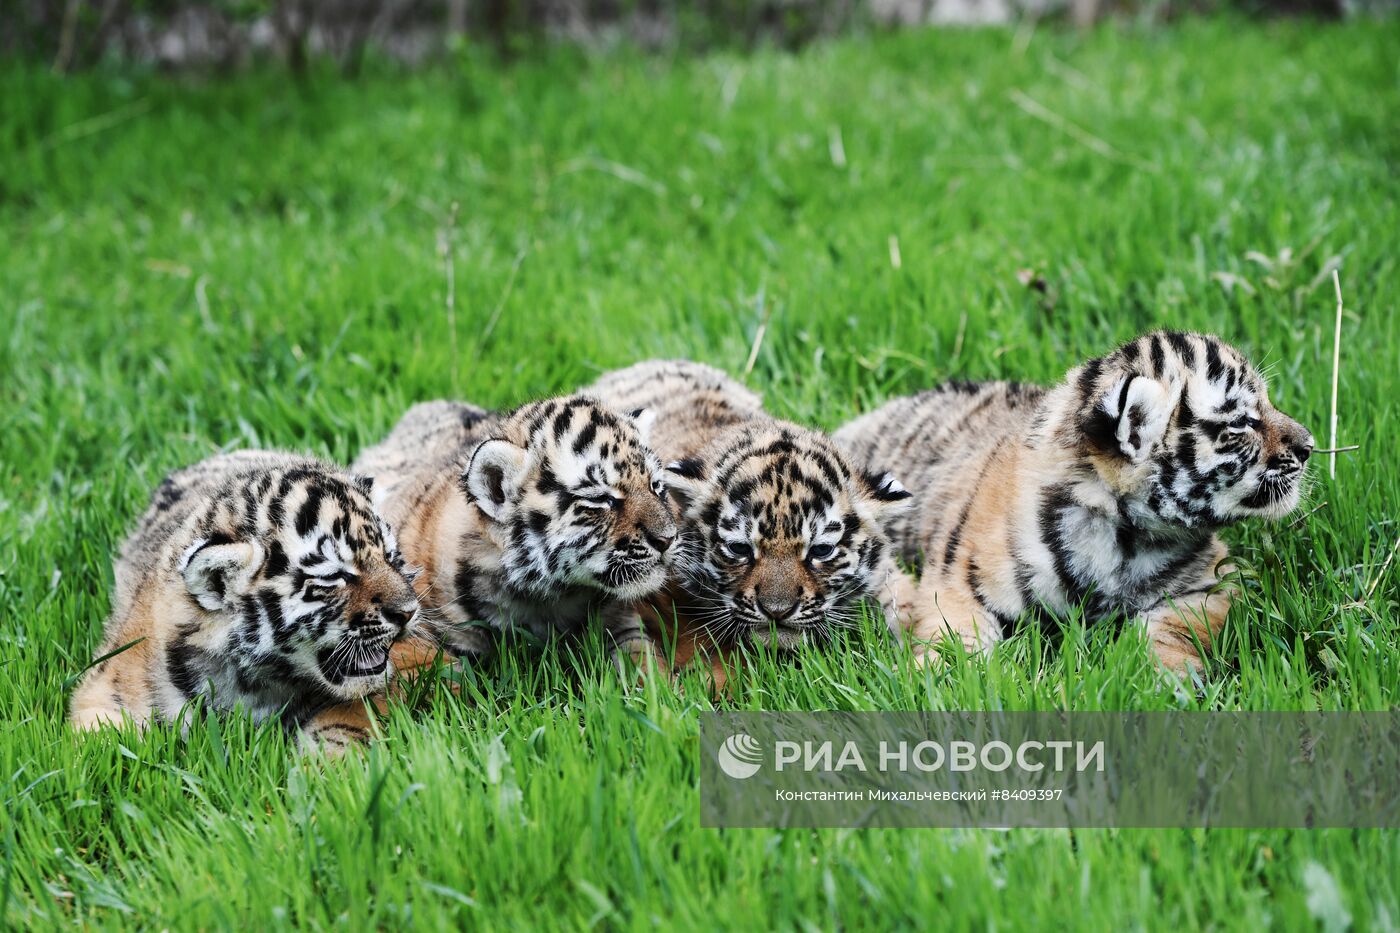 Работа сафари-парка "Тайган" в Крыму